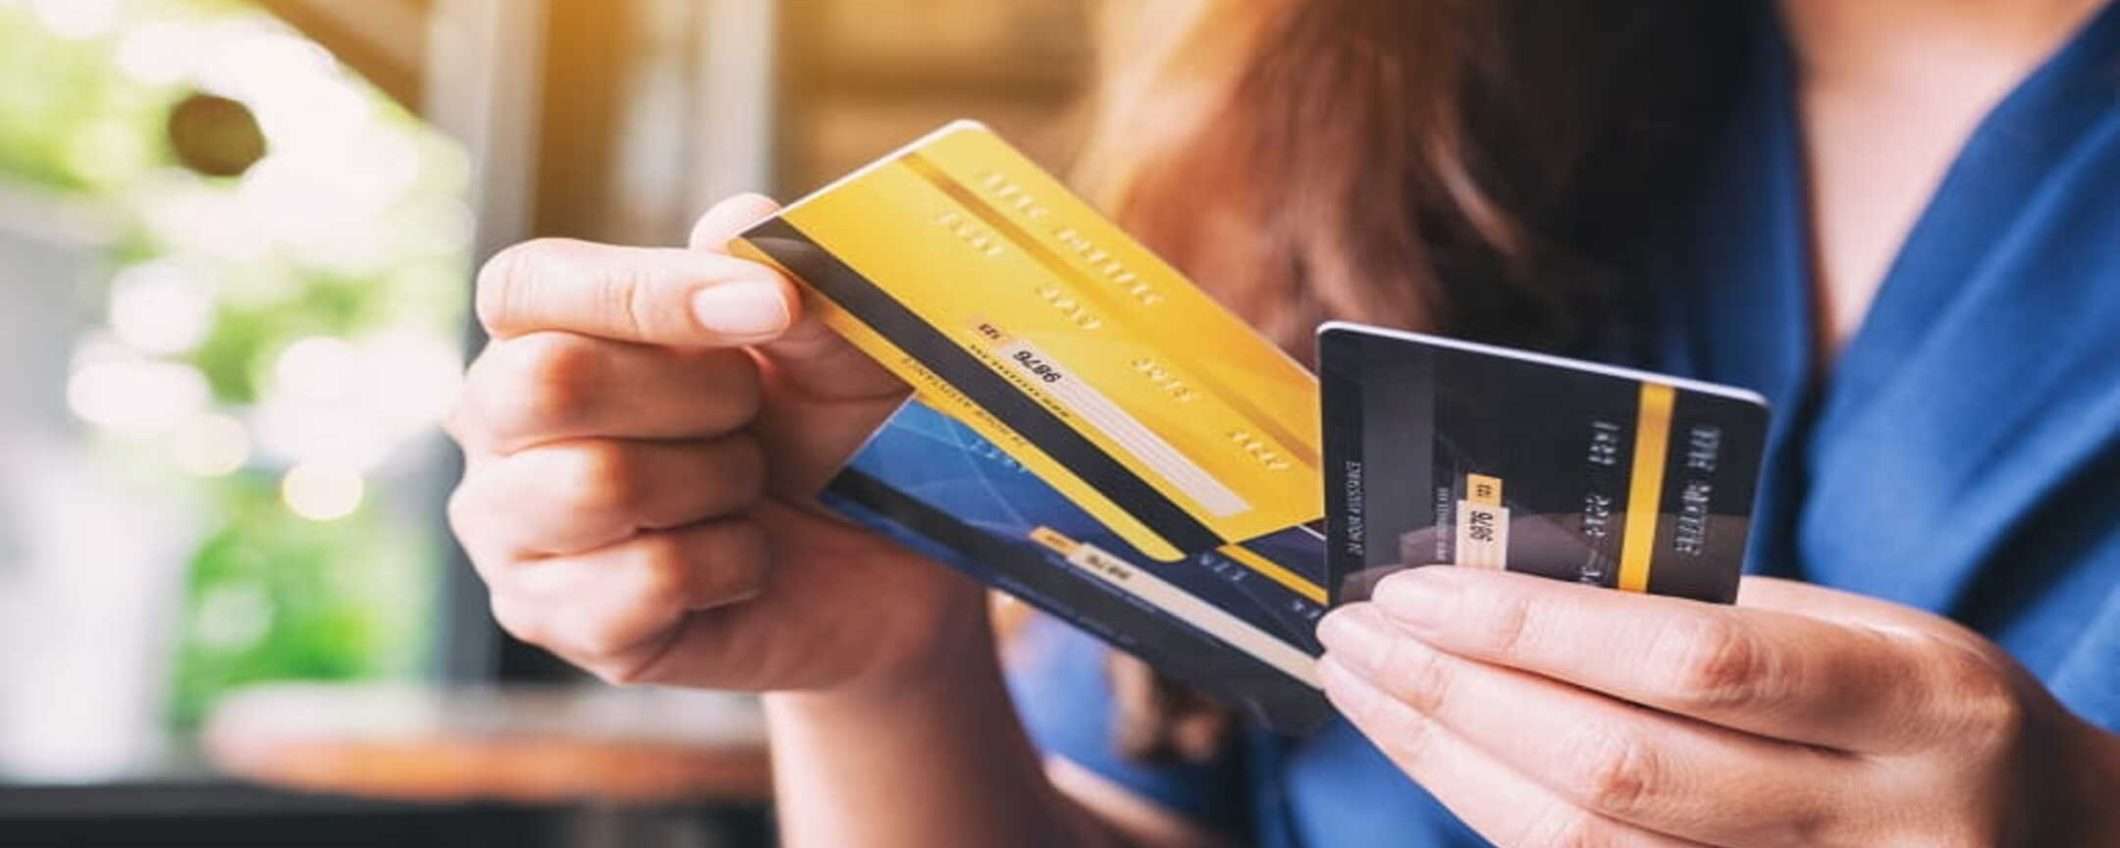 5 errori comuni tra chi usa le carte di credito